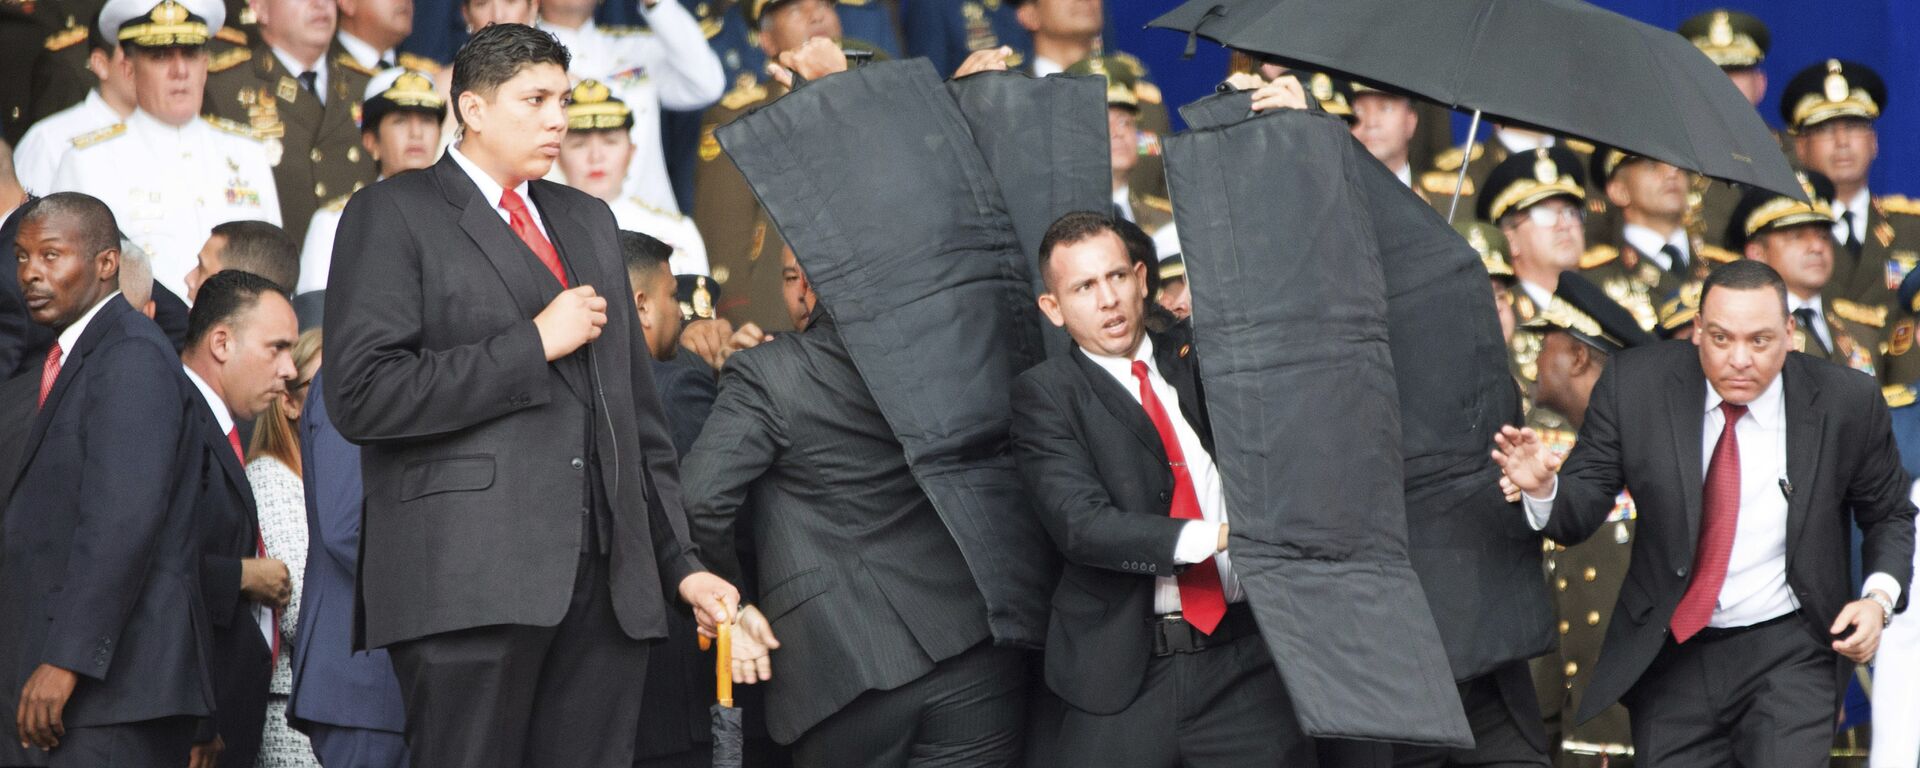 Personal de seguridad rodea al presidente de Venezuela, Nicolás Maduro, durante un incidente mientras daba un discurso en Caracas - Sputnik Mundo, 1920, 15.03.2019